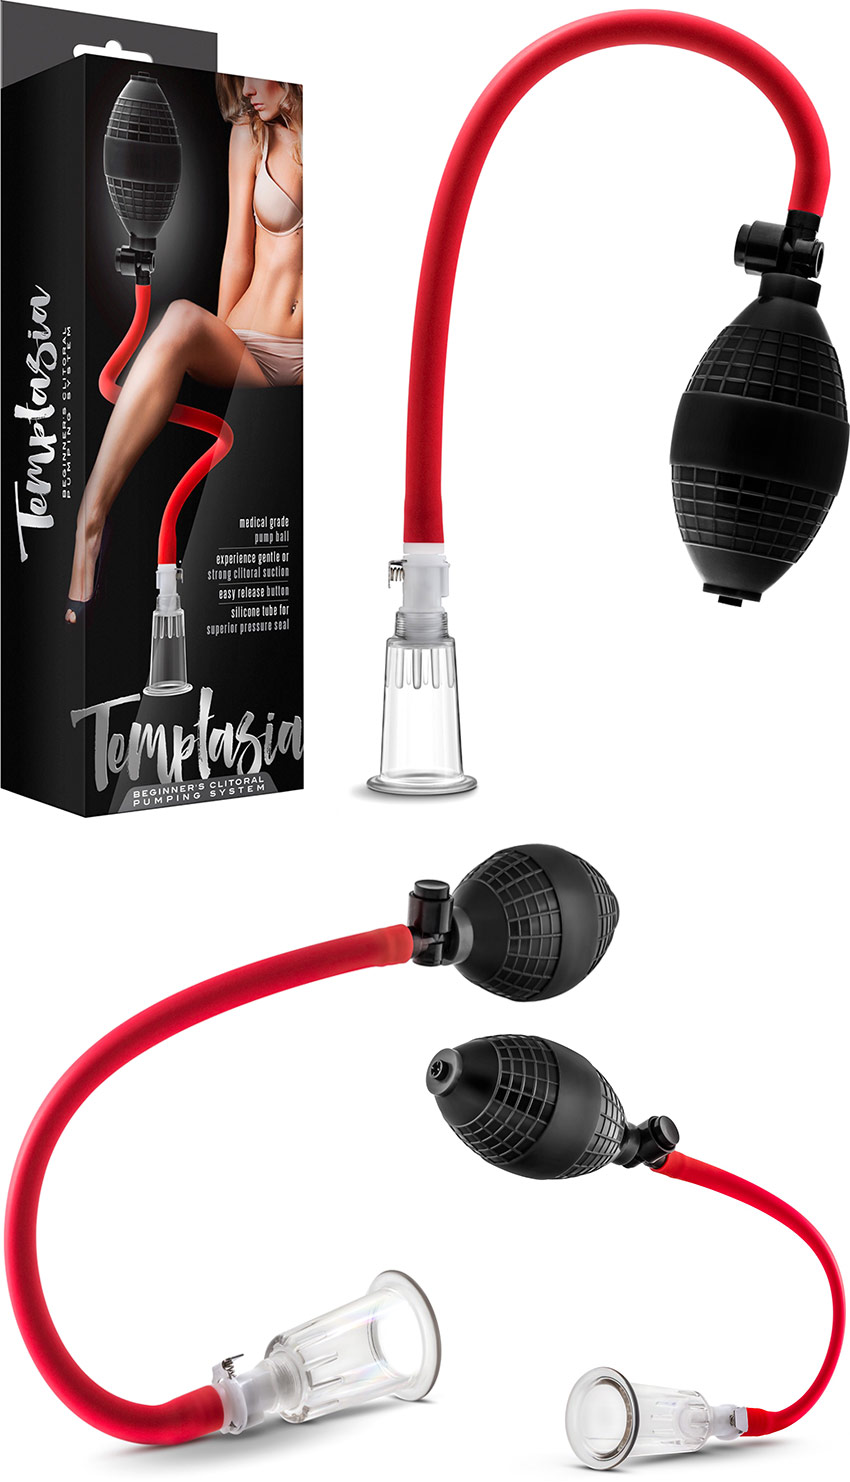 Pompa per clitoride Temptasia con cilindro rimovibile